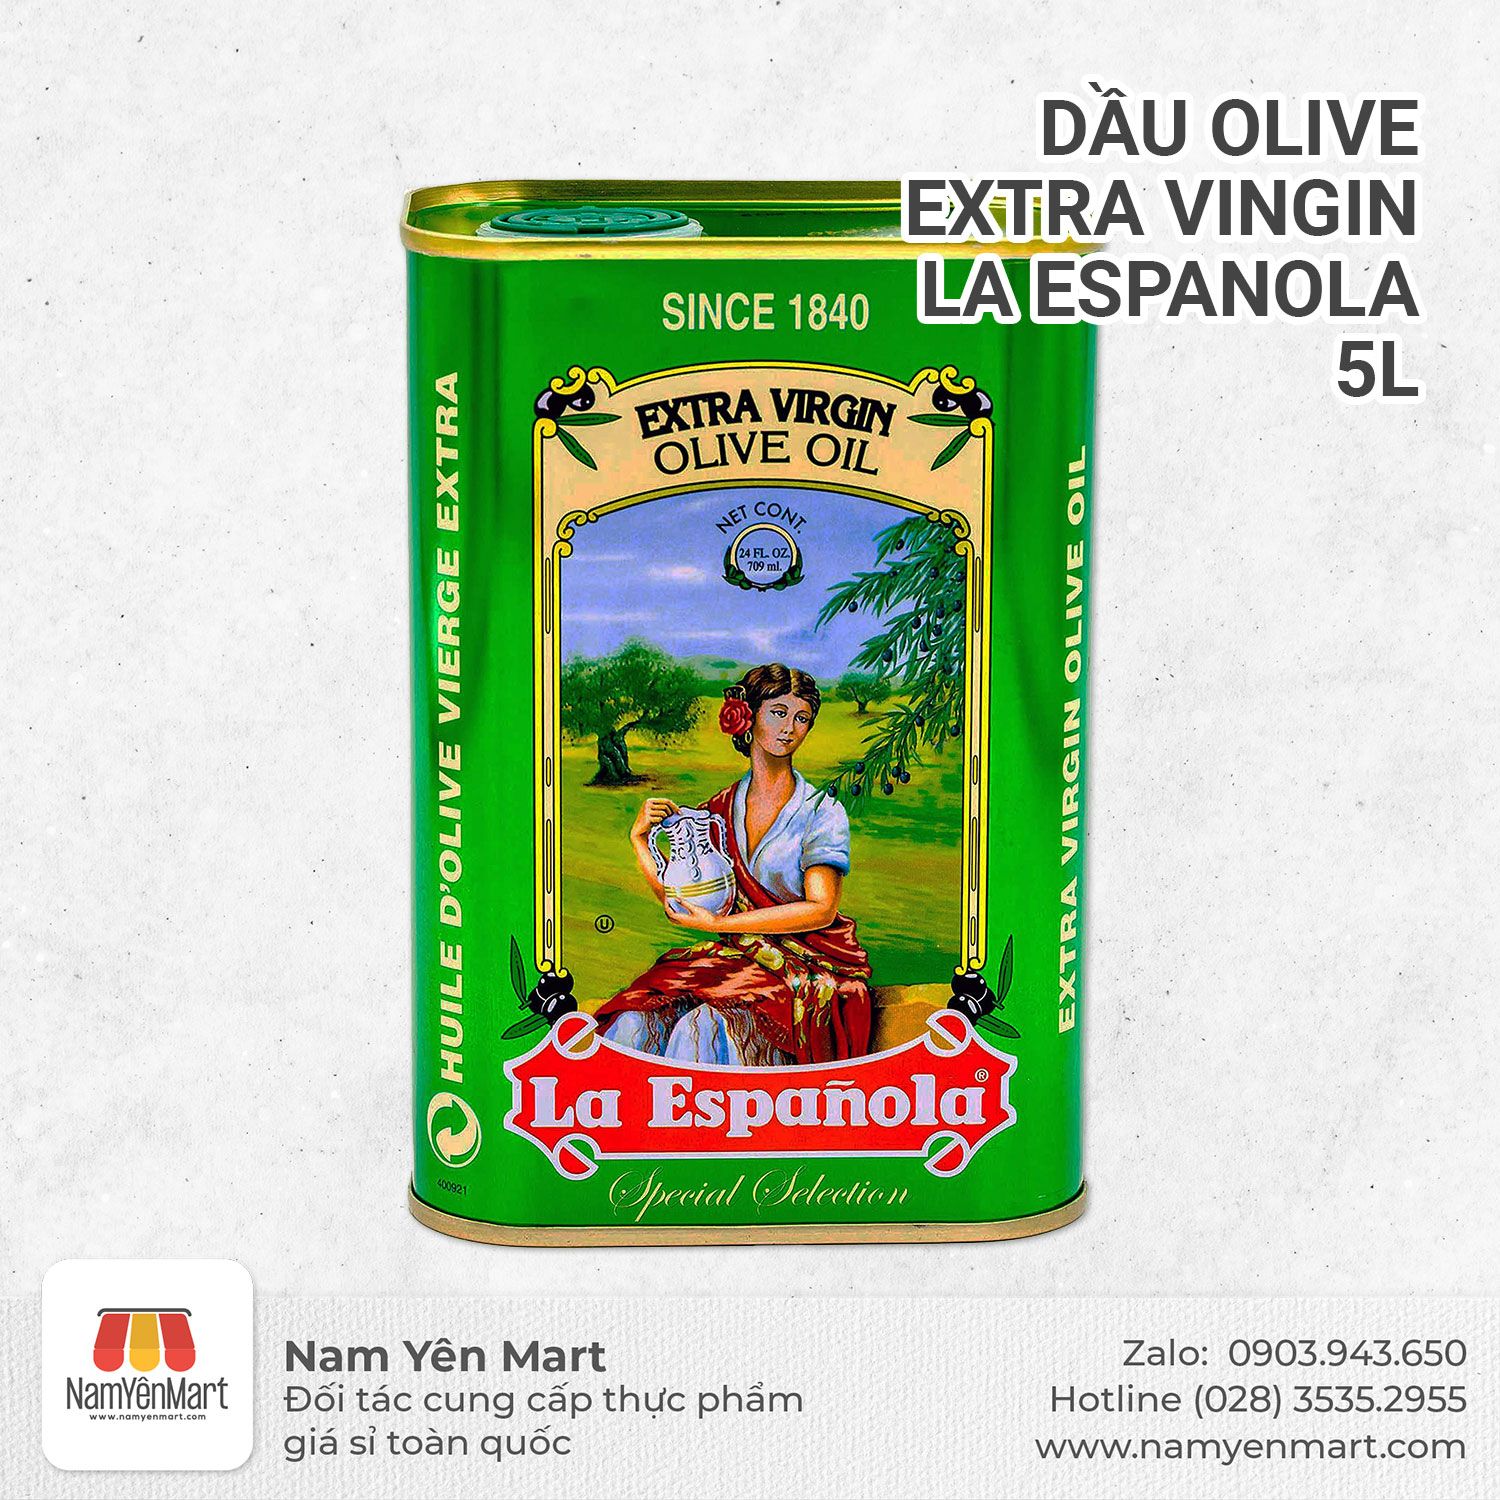  Dầu olive Extra Vingin La Espanola 5L 